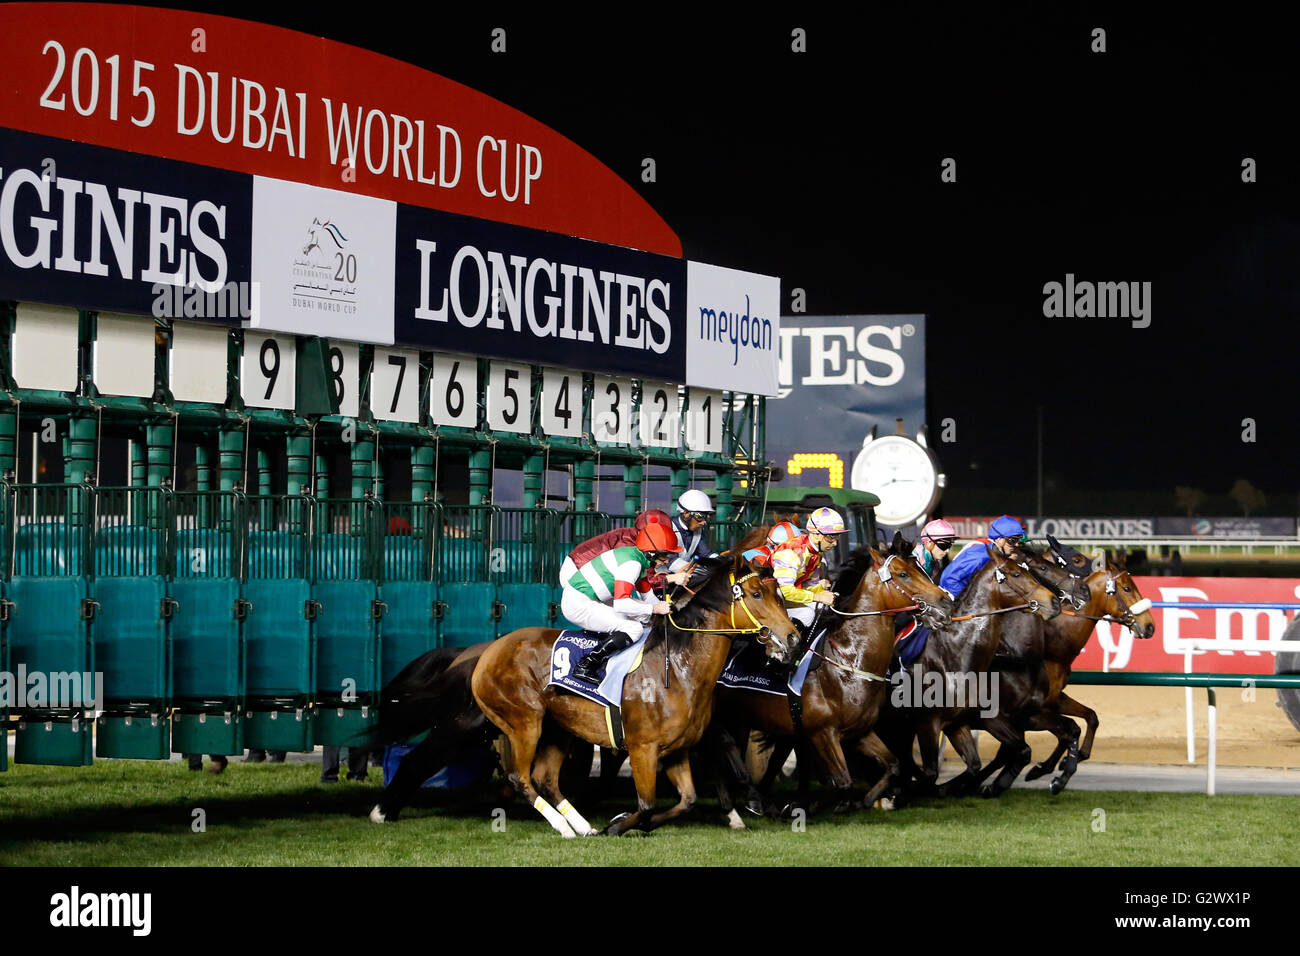 28.03.2015, Dubai, Dubai, Vereinigte Arabische Emirate - Pferde und Jockeys zu Beginn zu einem Pferderennen. 00S150328D745CAROEX. JPG - nicht für den Verkauf in G E R M A N Y, A U S T R I A S W I T Z E R L A N D [MODEL-RELEASE: Nein, PROPERTY-RELEASE: Nein, (C) Caro Fotoagentur / Sorge, http://www.caro-images.com, info@carofoto.pl - jegliche Nutzung dieses Bildes unterliegt GEMA!] Stockfoto